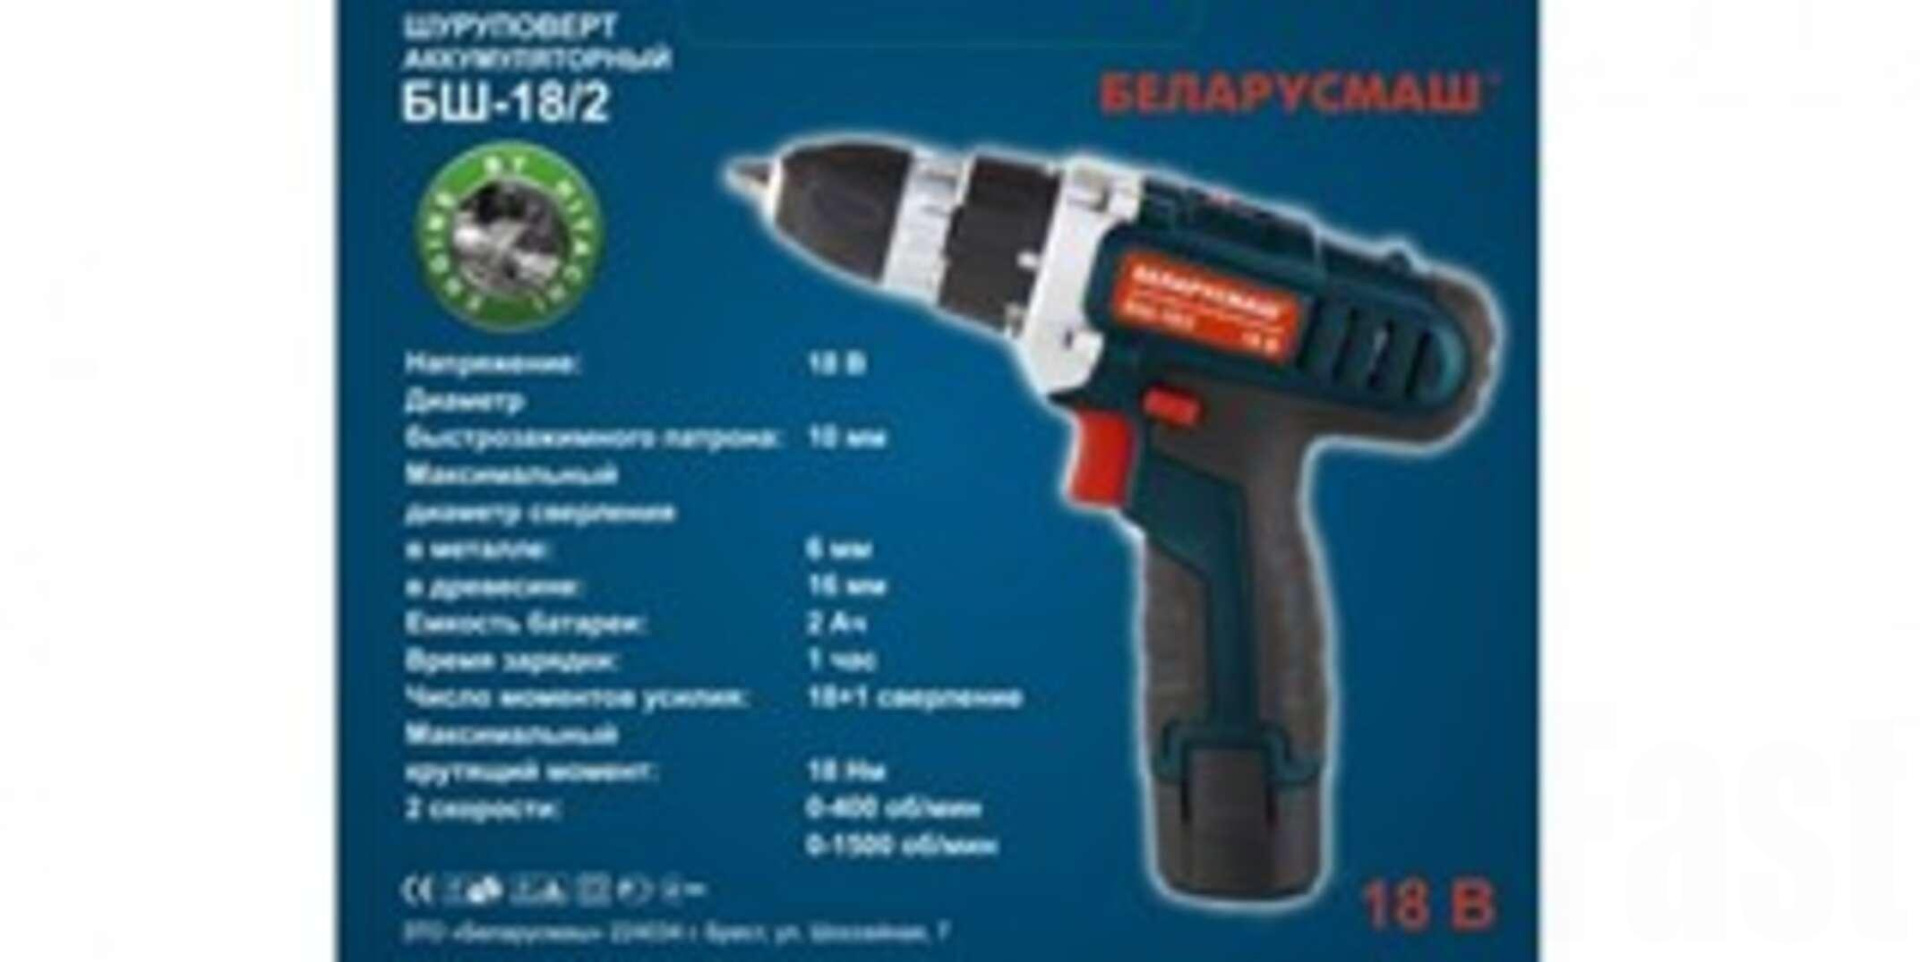 Шуруповерт аккумуляторный   Беларусмаш 18 Lition   ( 2 аккумулятора, 2 А/ч, 2 скорости, 0-1500 об/мин )   SVET